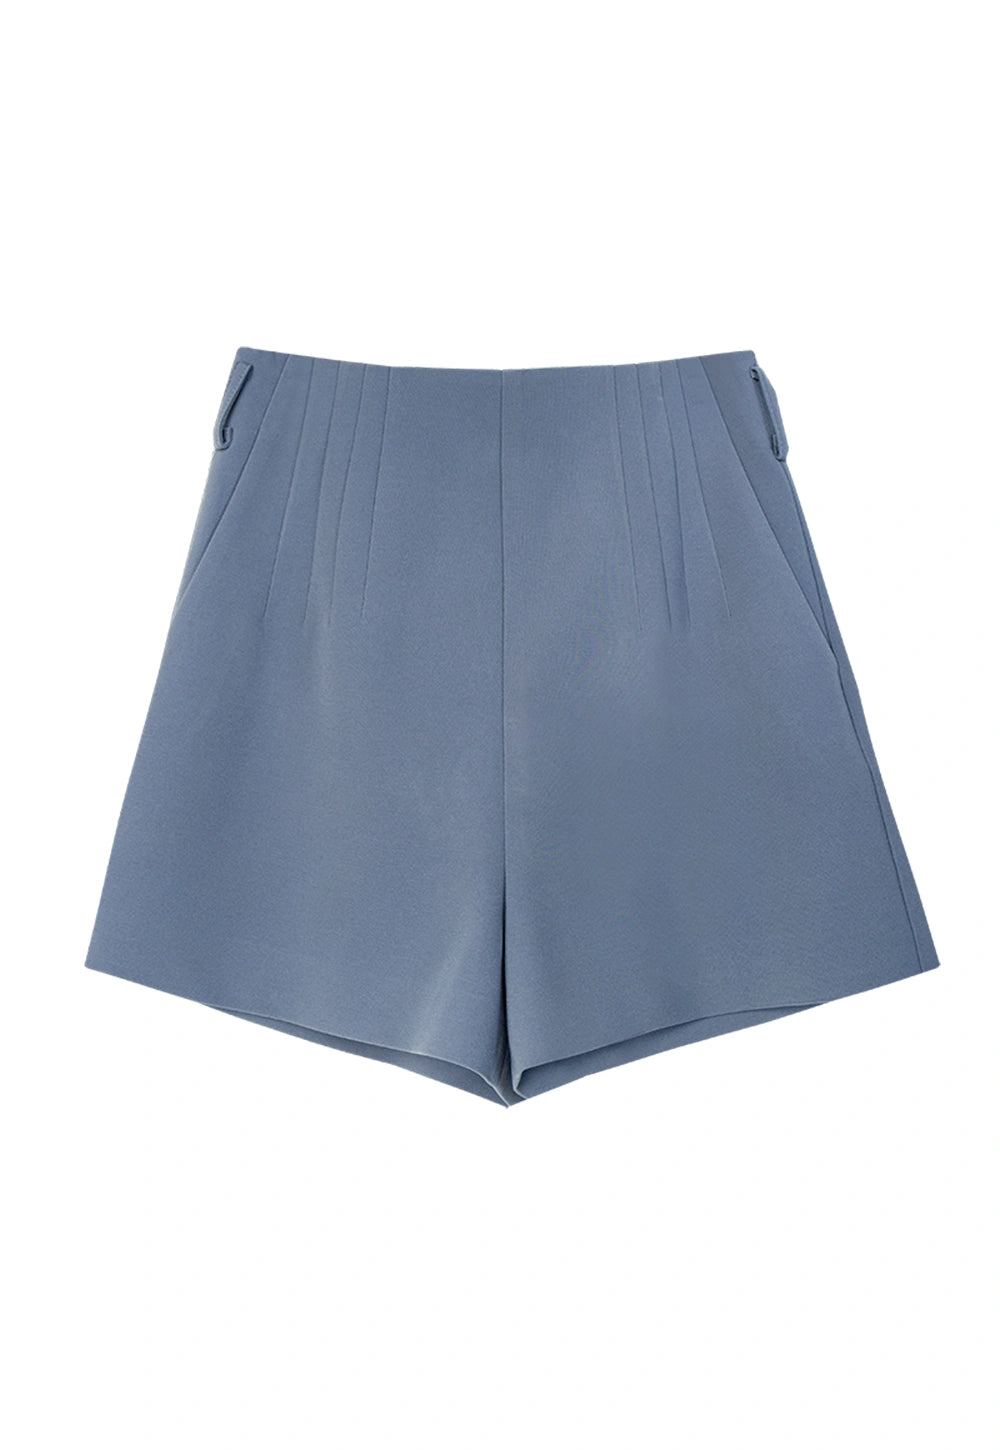 Women's Blue Pleated Shorts - High Waist